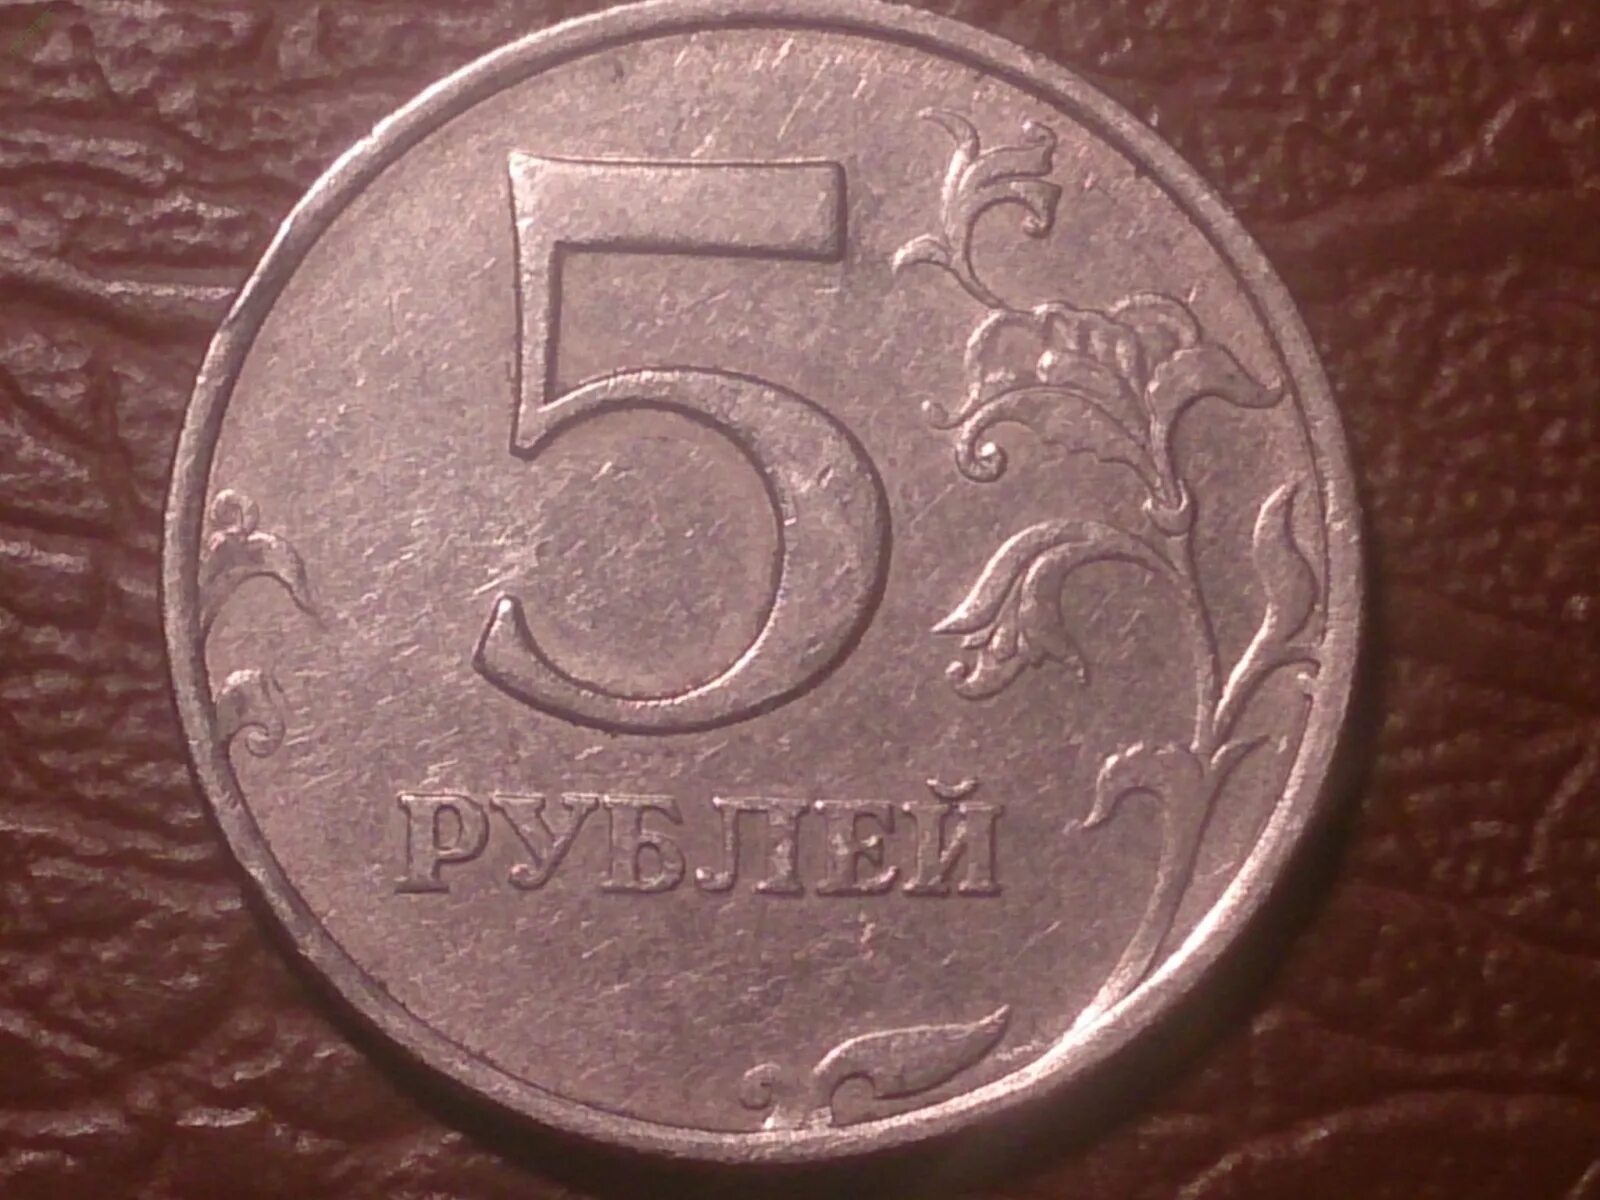 5 рублей повышенной. 5 Рублей 1997 ММД СПМД. 5 Рублей 1997 ММД. 5 Рублей 1997 год Санкт Петербургский монетный двор. 5 Рублей 1997 СПМД.